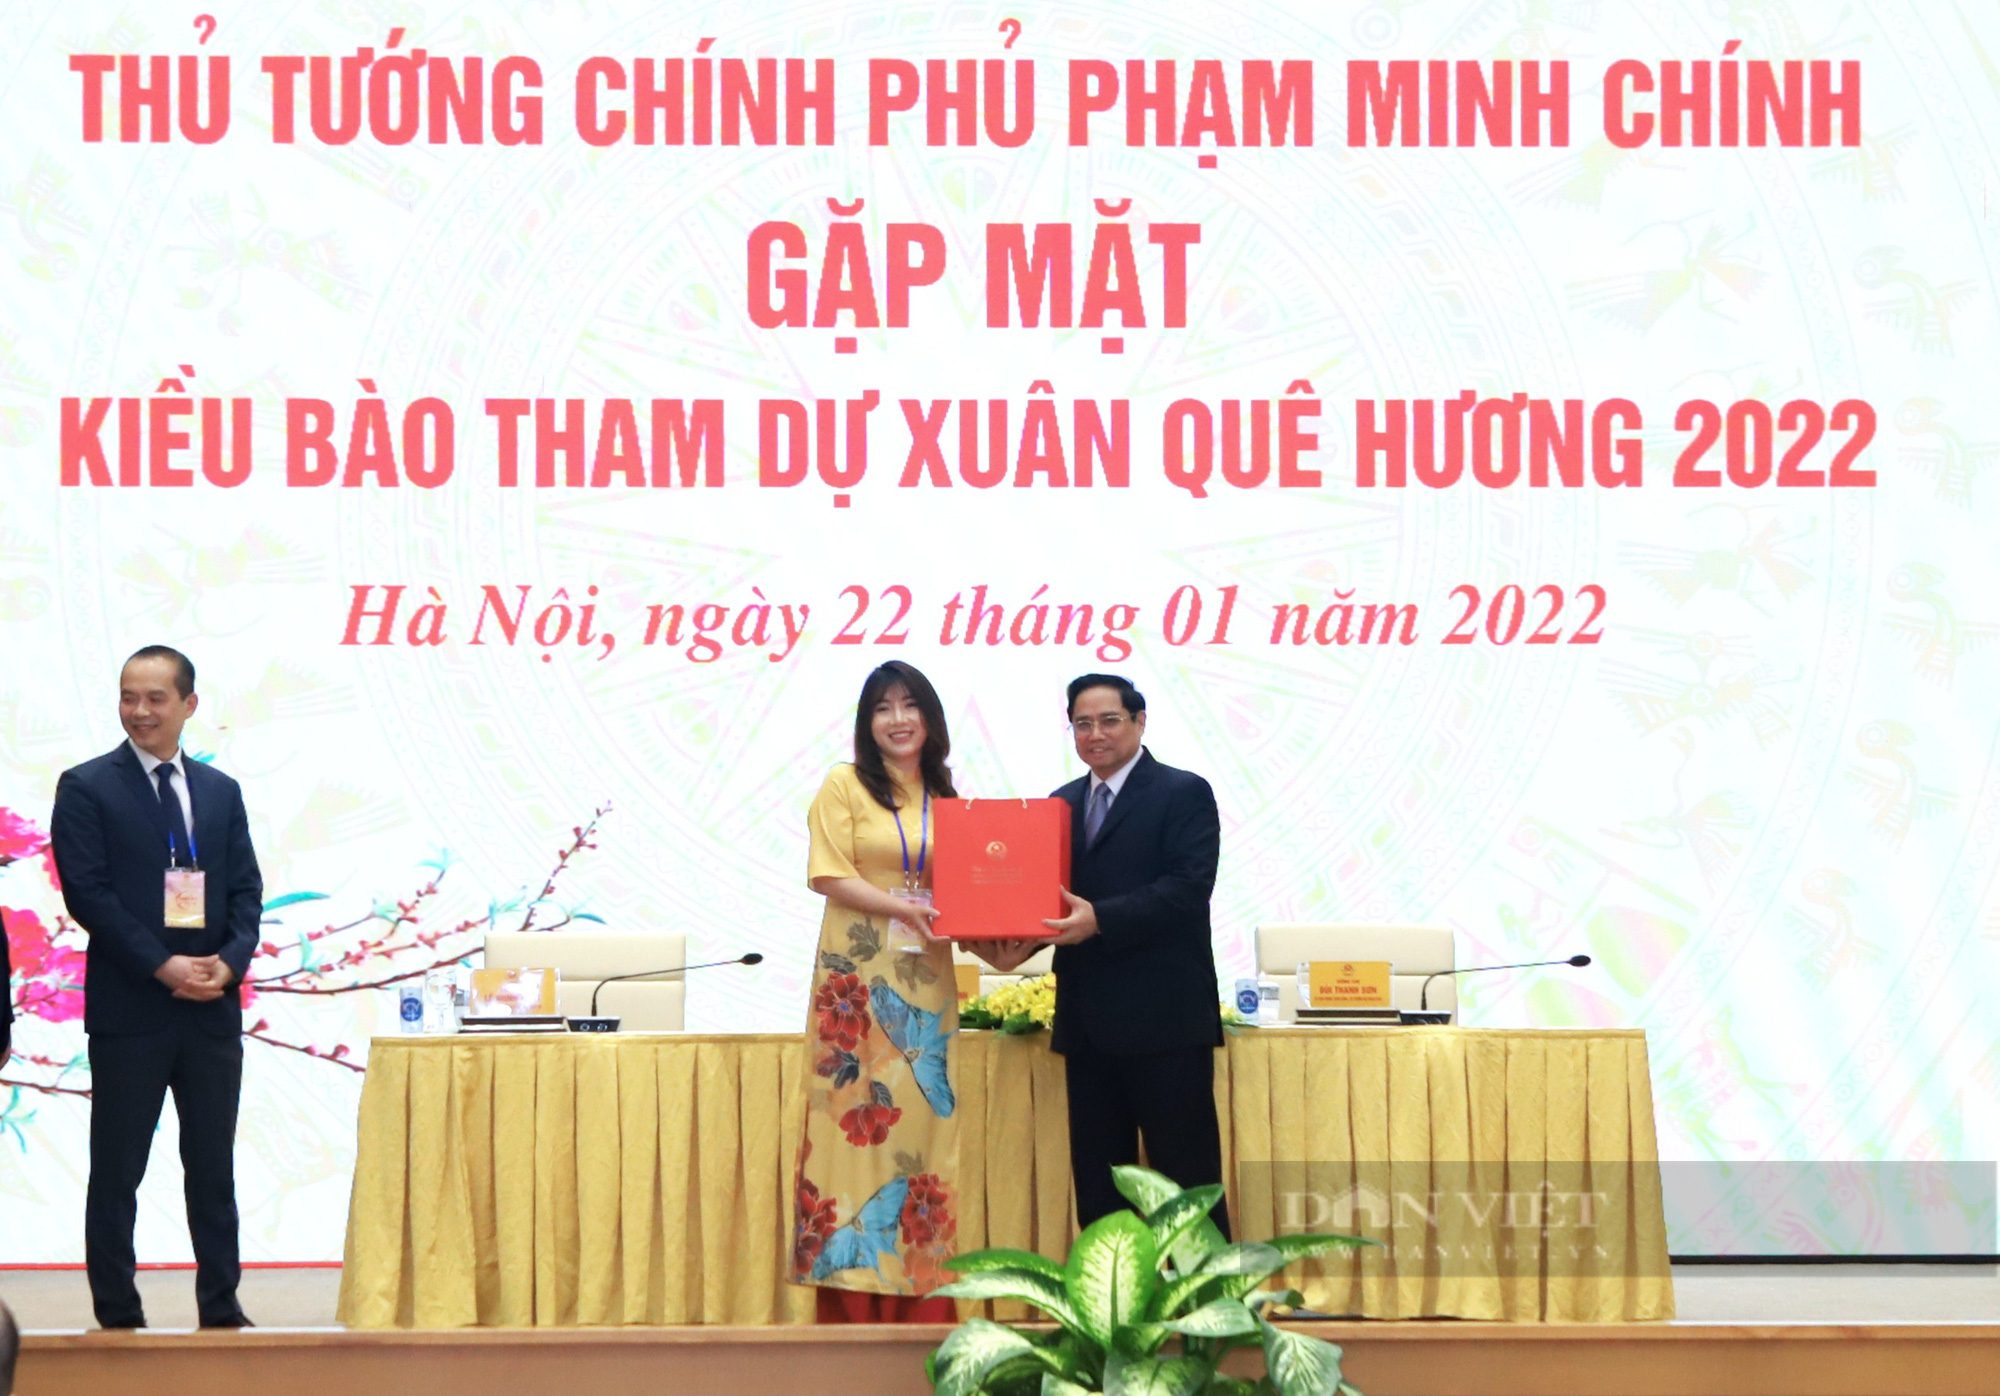 Thủ tướng Phạm Minh Chính gặp mặt kiều bào dự Xuân quê hương 2022 - Ảnh 9.